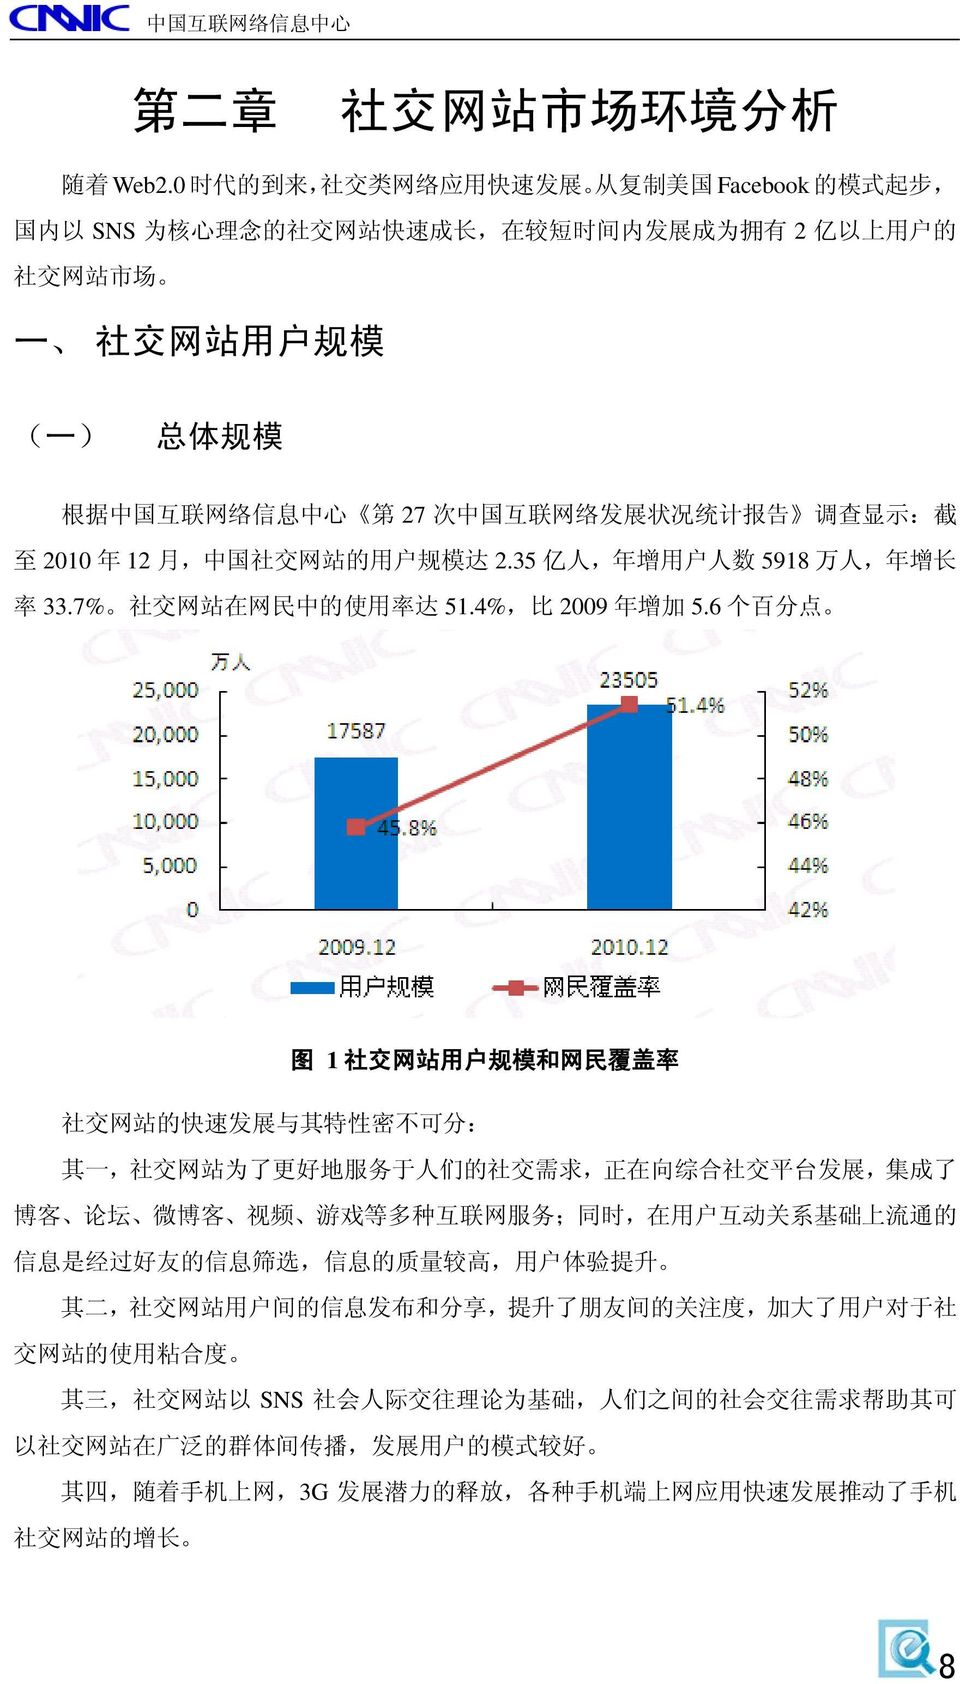 络 信 息 中 心 第 27 次 中 国 互 联 网 络 发 展 状 况 统 计 报 告 调 查 显 示 : 截 至 2010 年 12 月, 中 国 社 交 网 站 的 用 户 规 模 达 2.35 亿 人, 年 增 用 户 人 数 5918 万 人, 年 增 长 率 33.7% 社 交 网 站 在 网 民 中 的 使 用 率 达 51.4%, 比 2009 年 增 加 5.